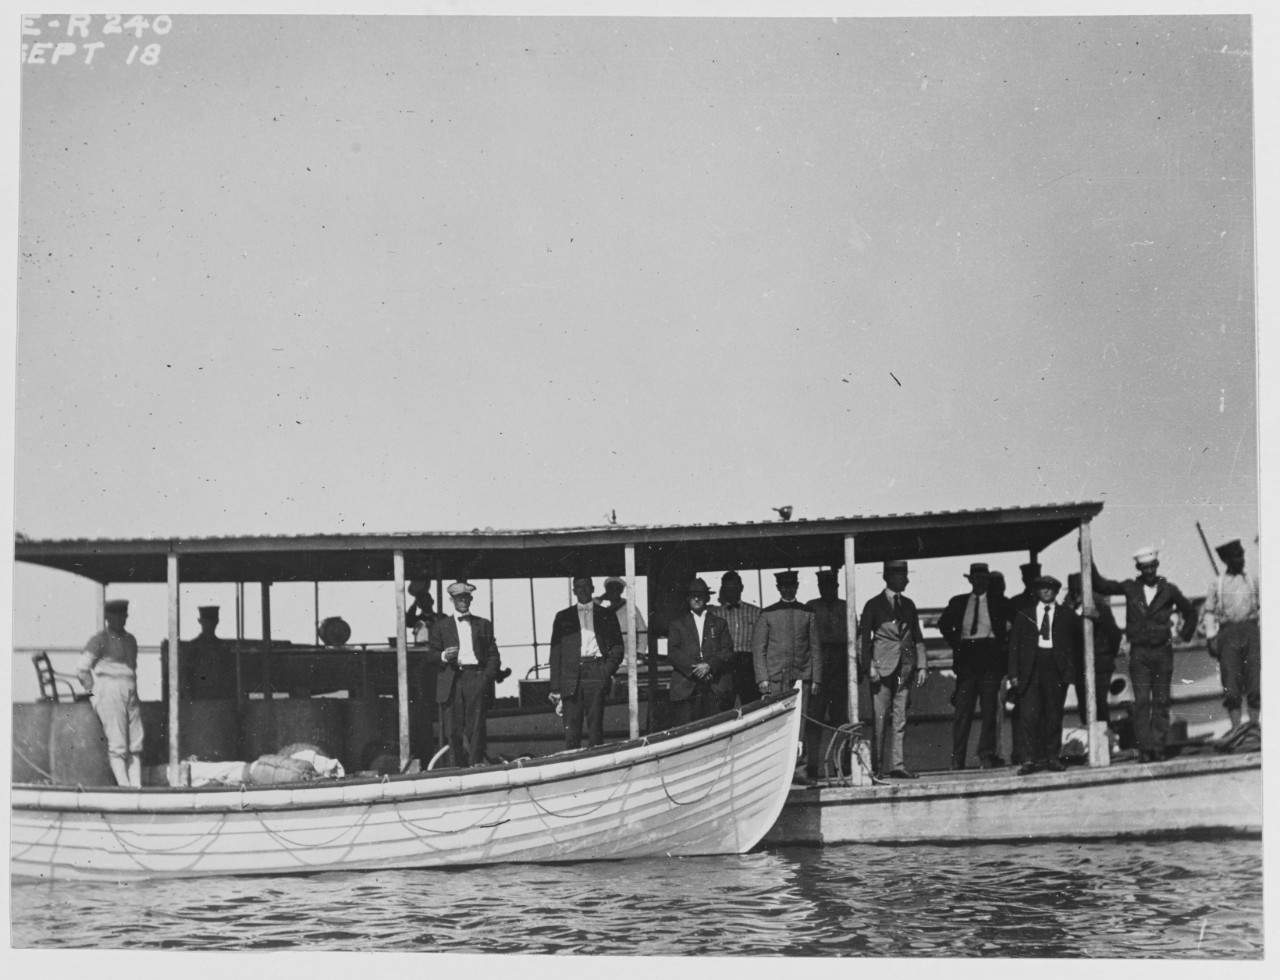 Barge taken at Assateague, Virginia.